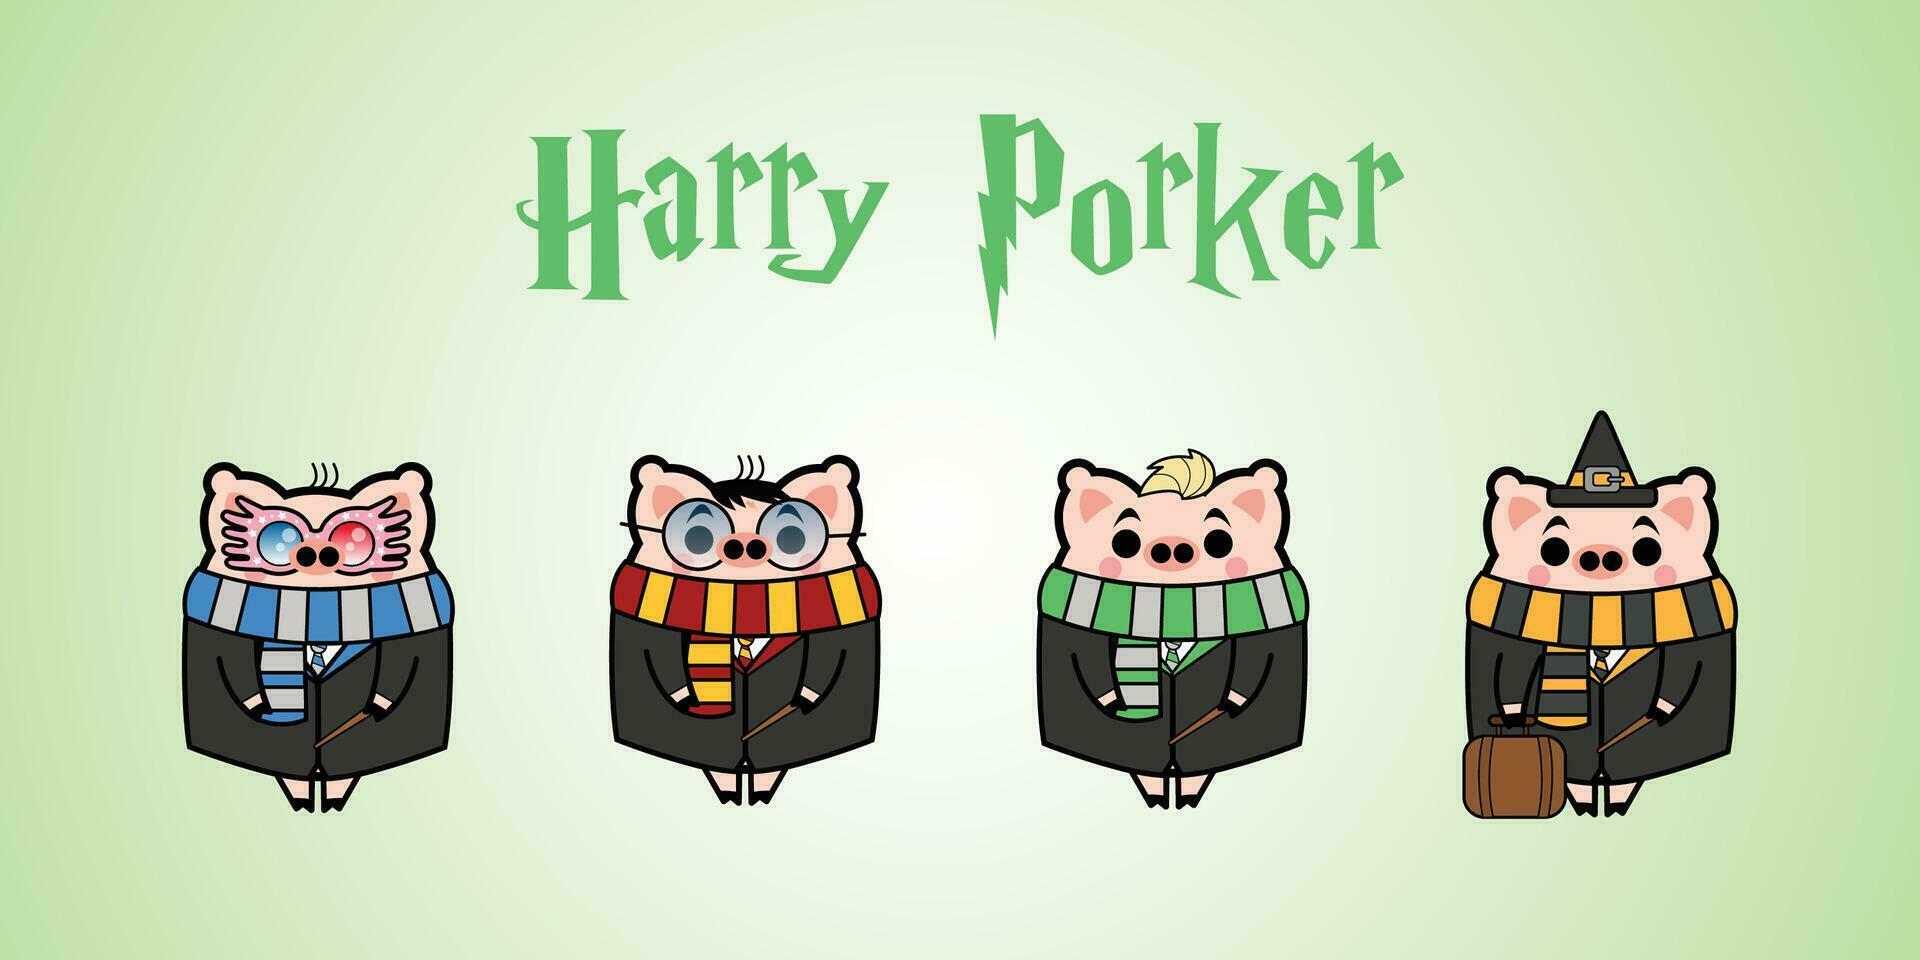 Harry Porker Cartoon Character Free Vector Design